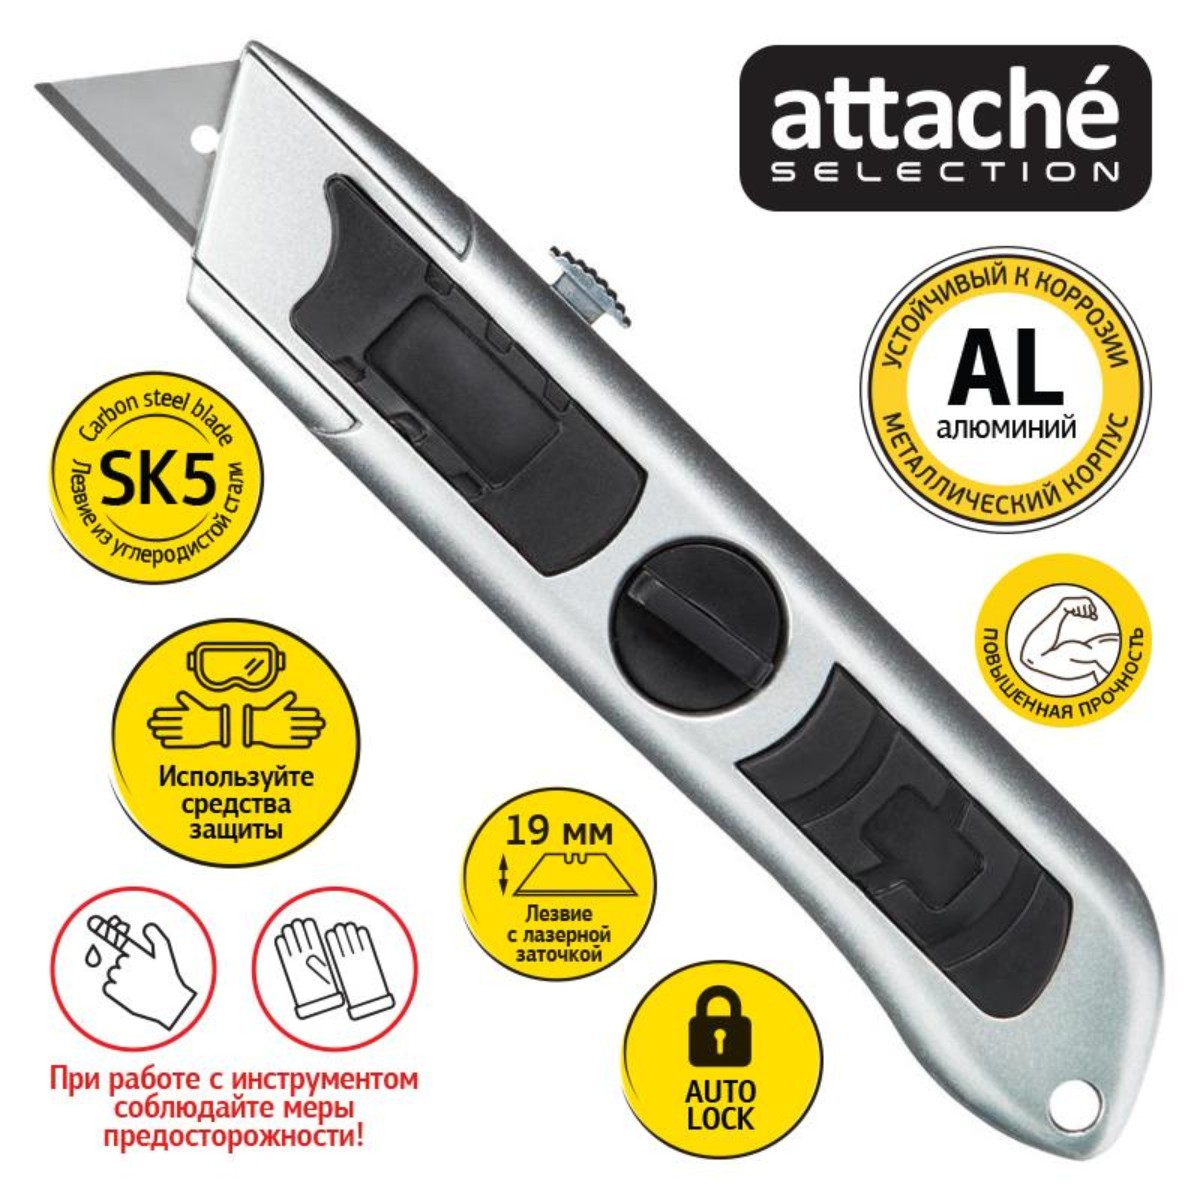 Канцелярский нож Attache универсальный Selection 19мм выдвижнойтрапеции алюминиевый корпус 3 шт - фото 2